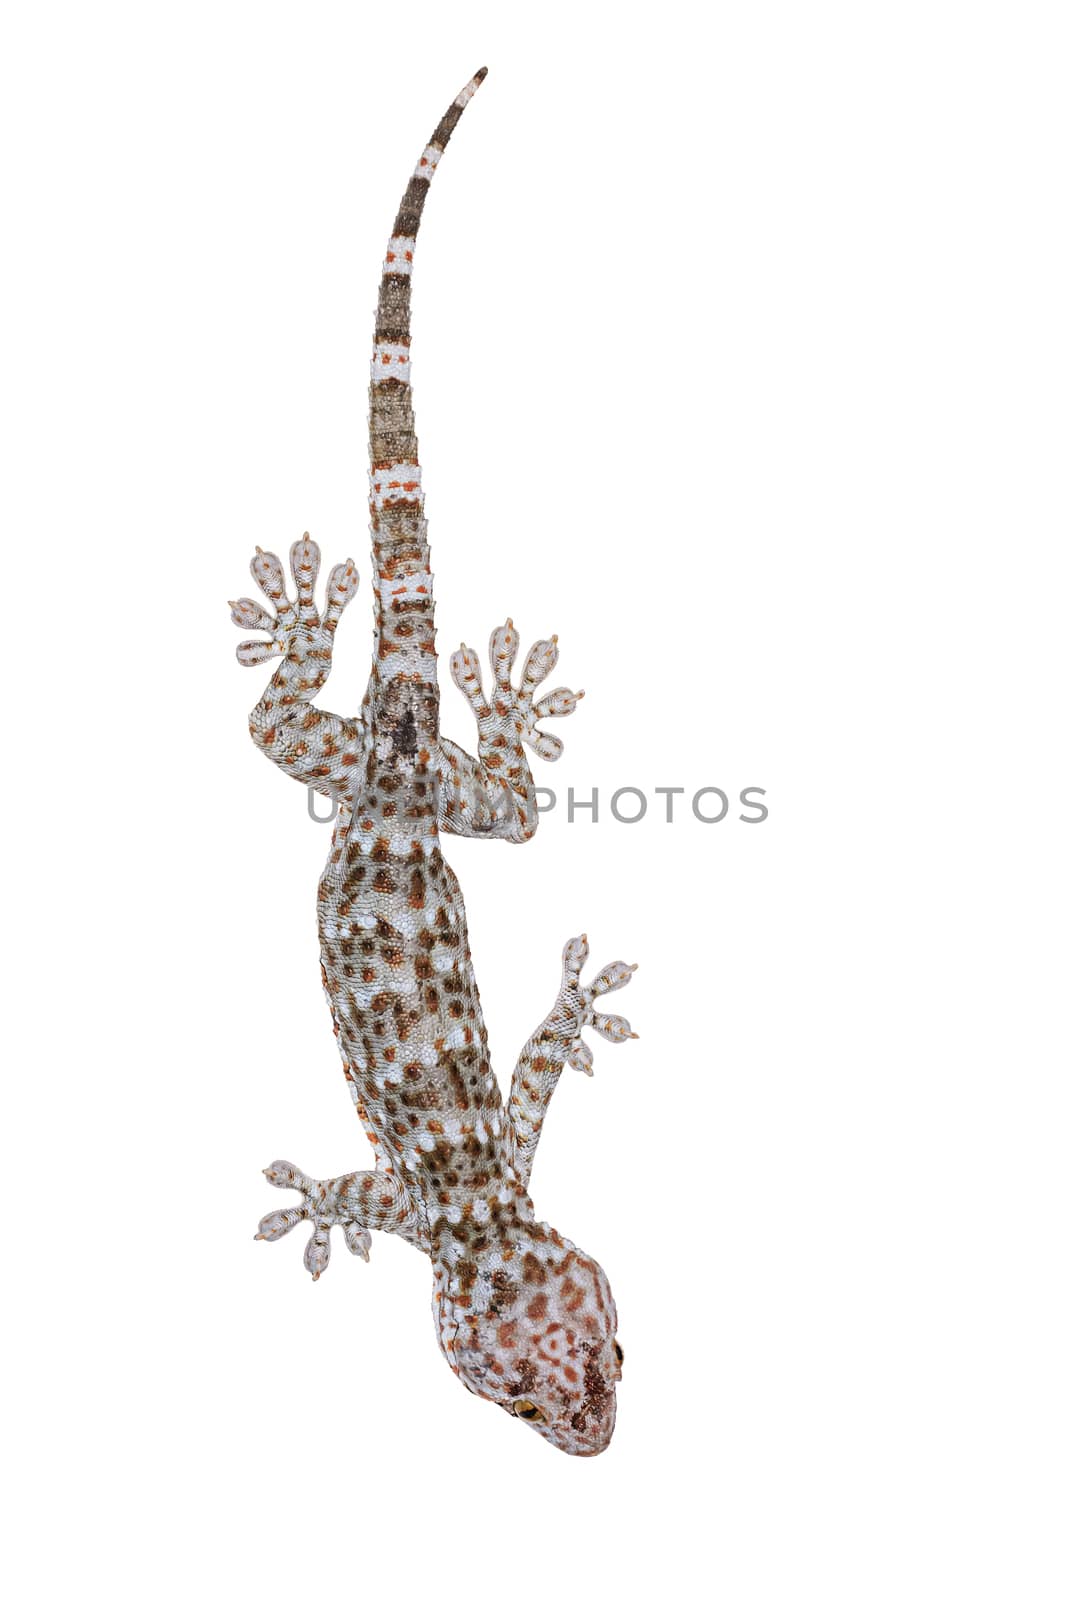 Gecko by NuwatPhoto